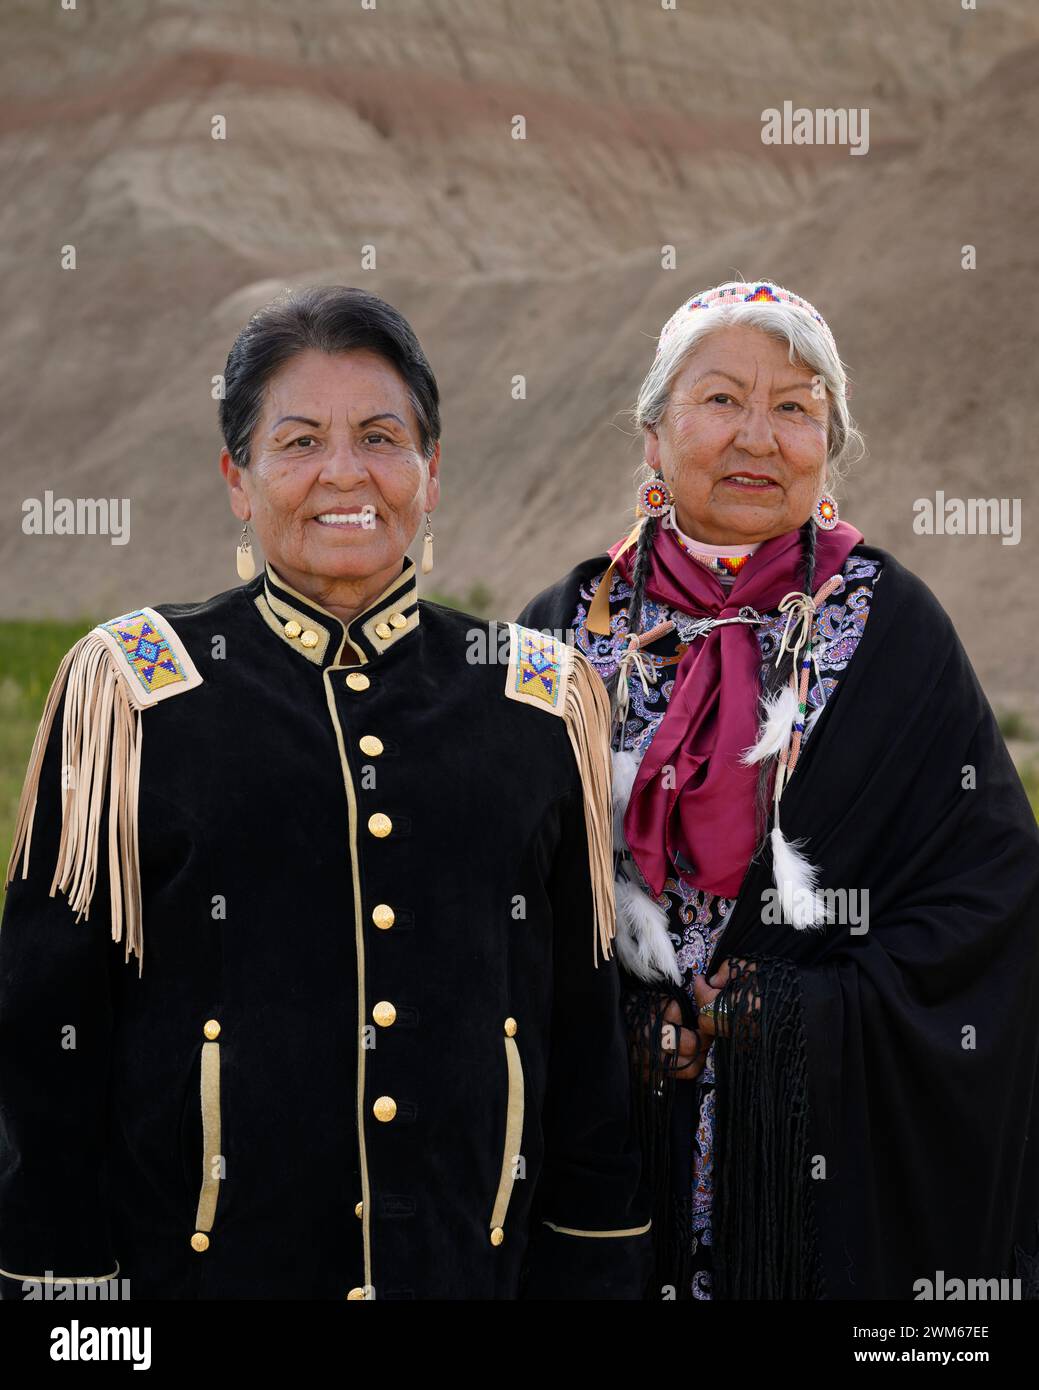 Sorelle Marian Sorace e Annamae Pushetonequa, Sicangu Lakota Oyate, nelle loro regalie personali. Badlands National Park, South Dakota. Foto Stock